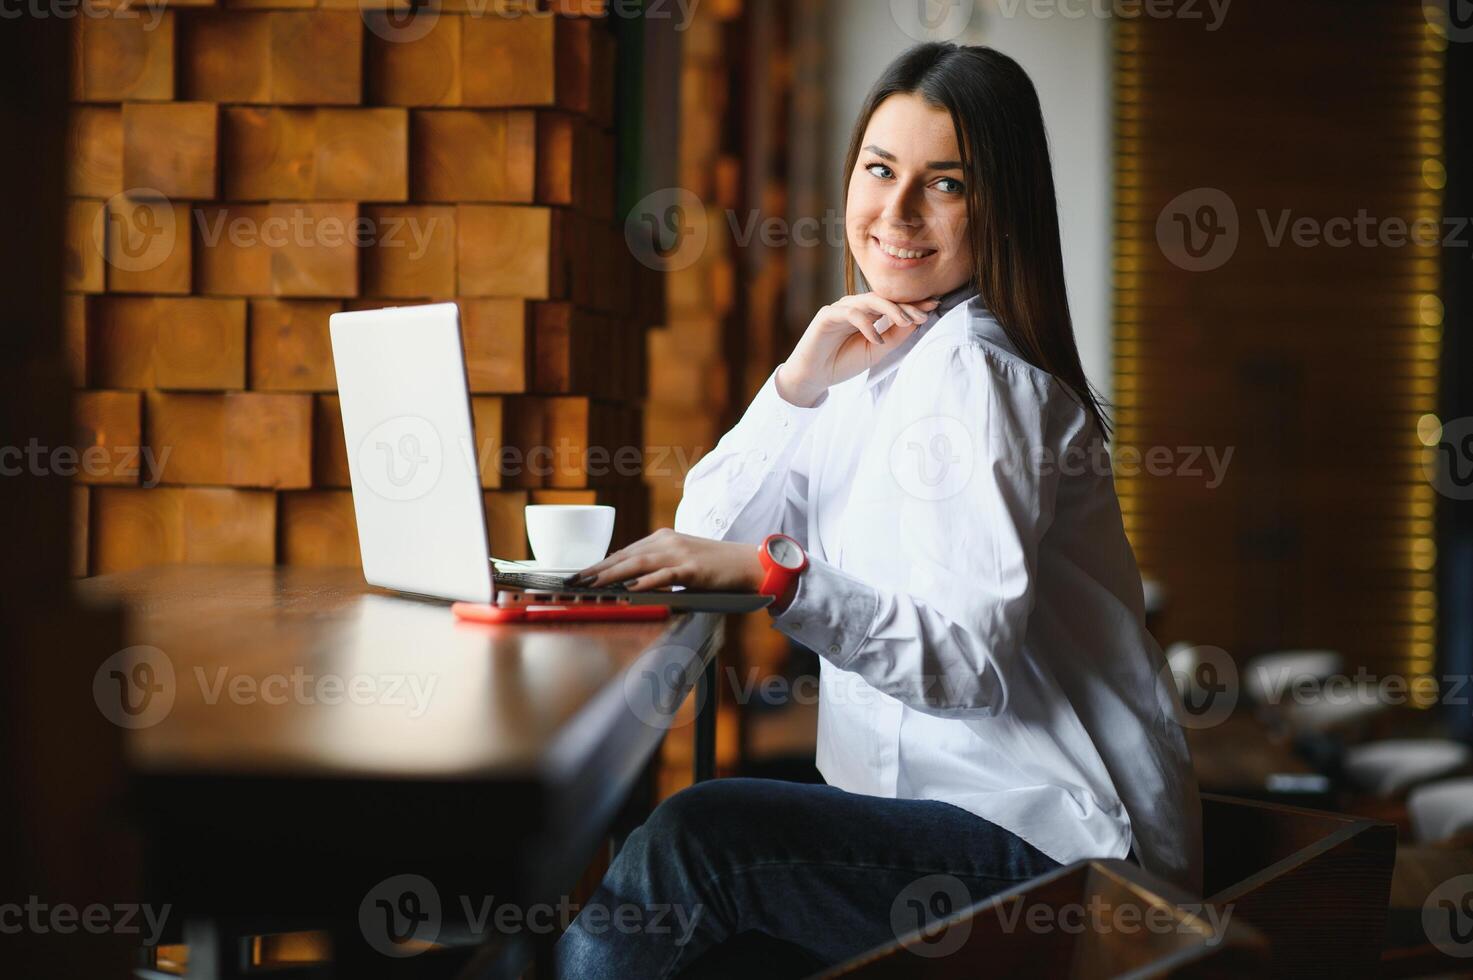 belle femme caucasienne rêvant de quelque chose tout en étant assise avec un net-book portable dans un café-bar moderne, jeune charmante pigiste pensant à de nouvelles idées pendant le travail sur un ordinateur portable photo